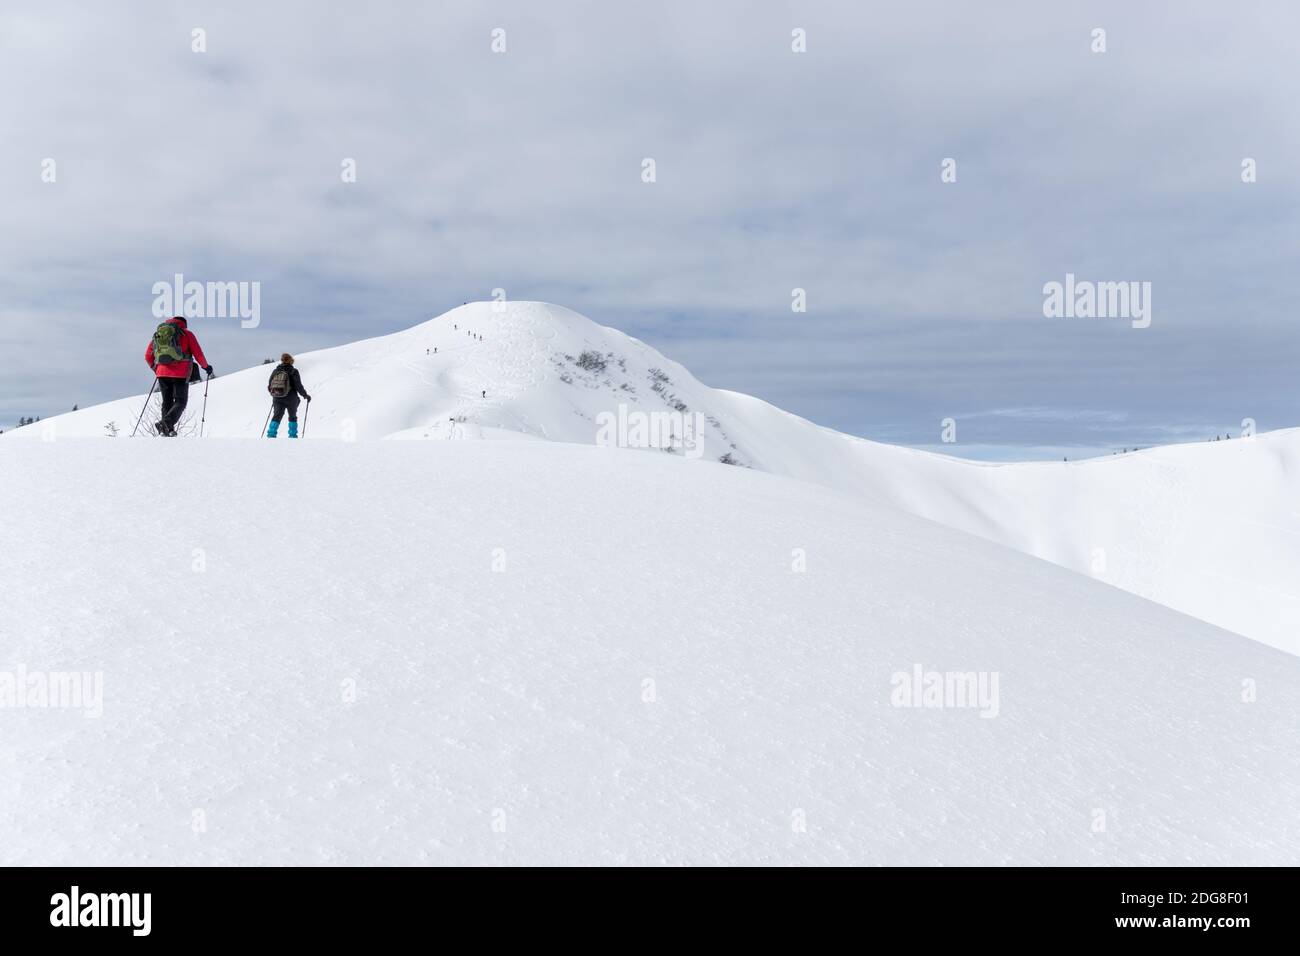 Seniorenpaar ist Schneeschuhwandern in alpinen Schnee Winter Berge. Allgau, Bayern, Deutschland. Stockfoto